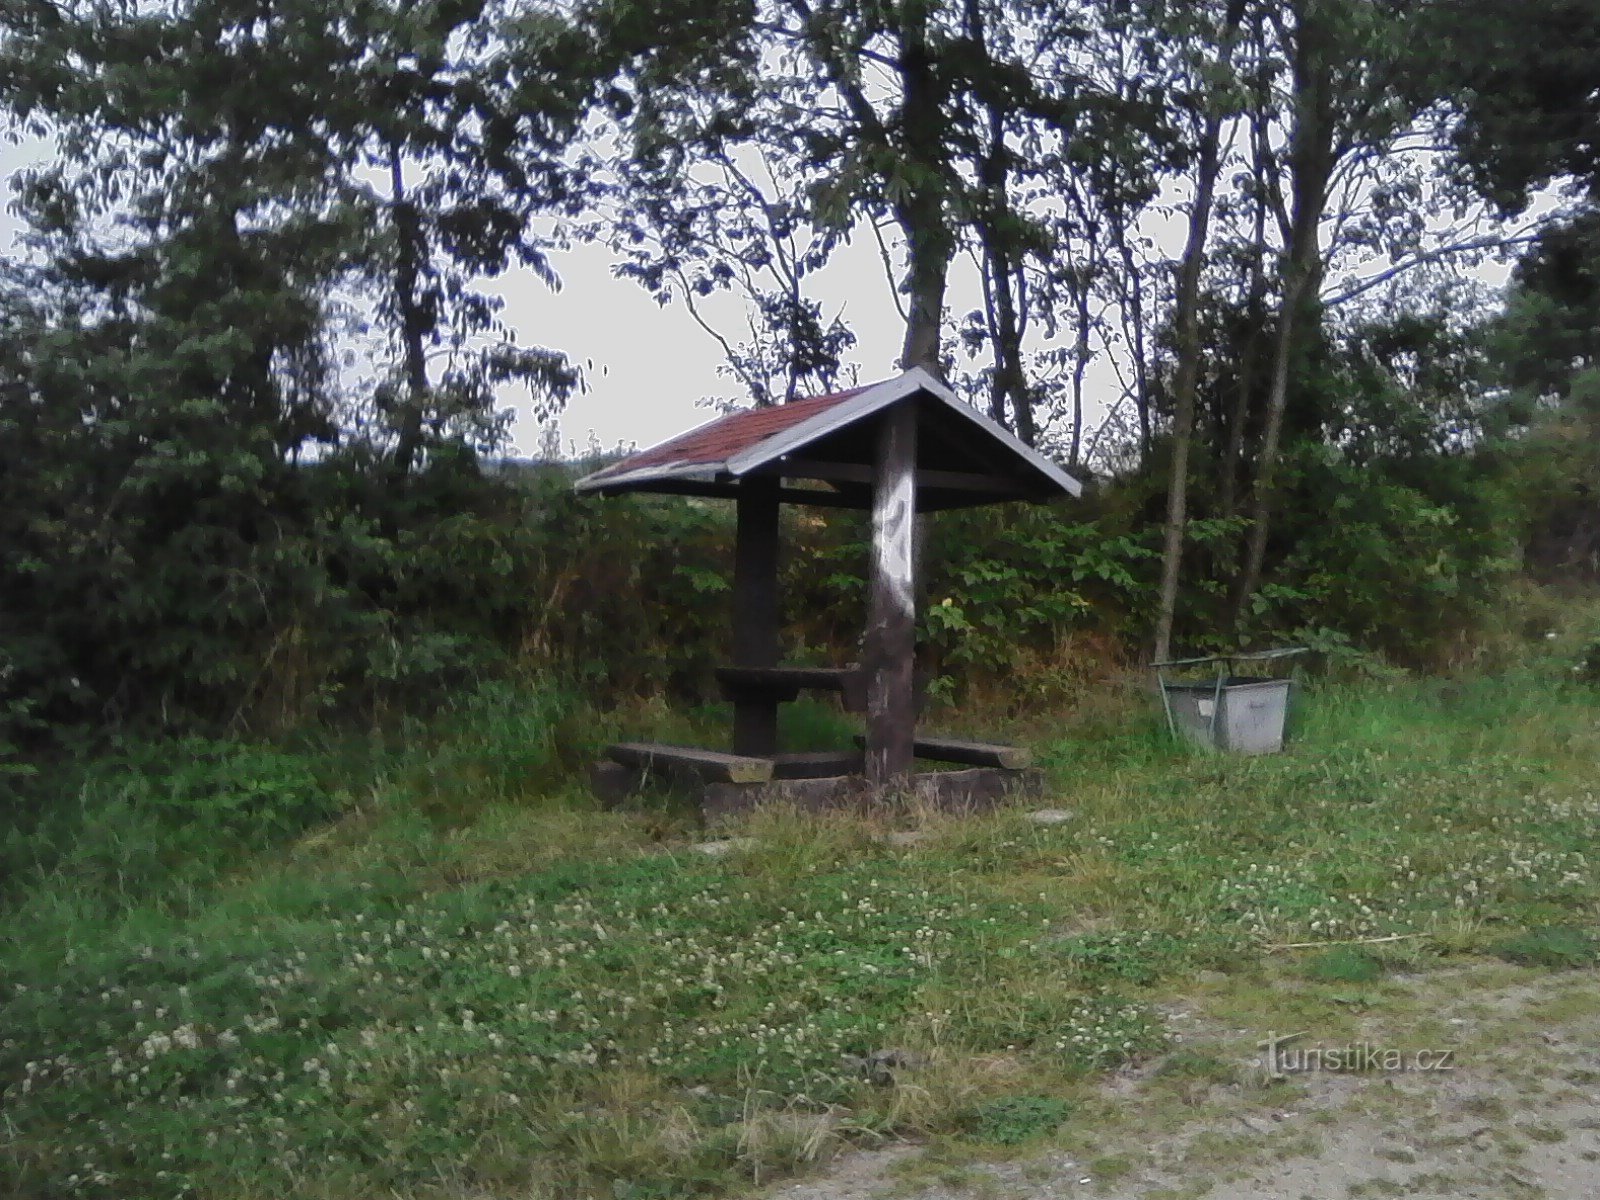 2. Refugio para turistas en Lomko.